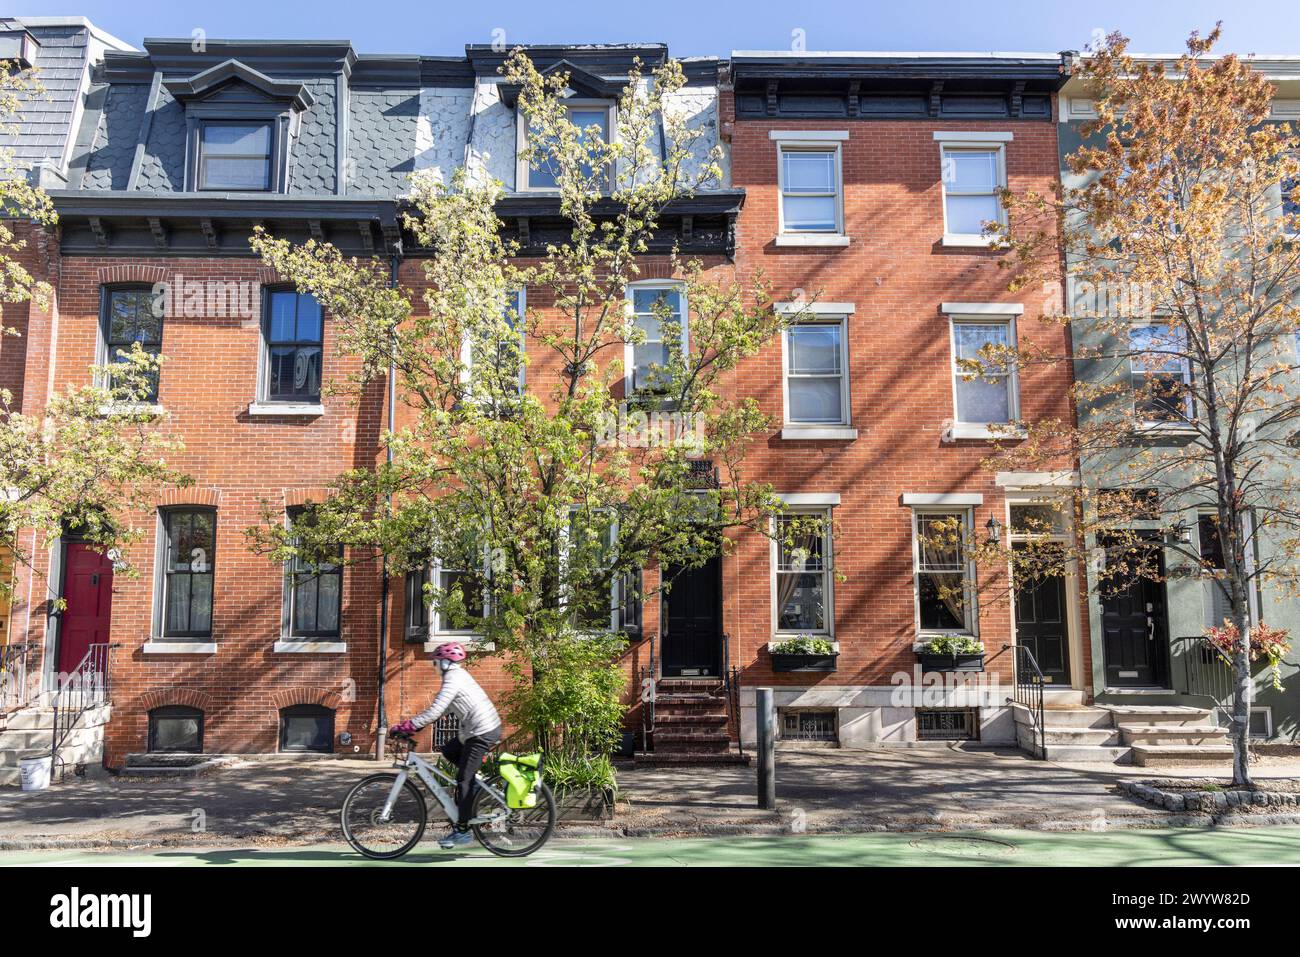 Cycliste devant les maisons en rangée, quartier Fitlers Square, Philadelphie, Pennsylvanie, États-Unis Banque D'Images